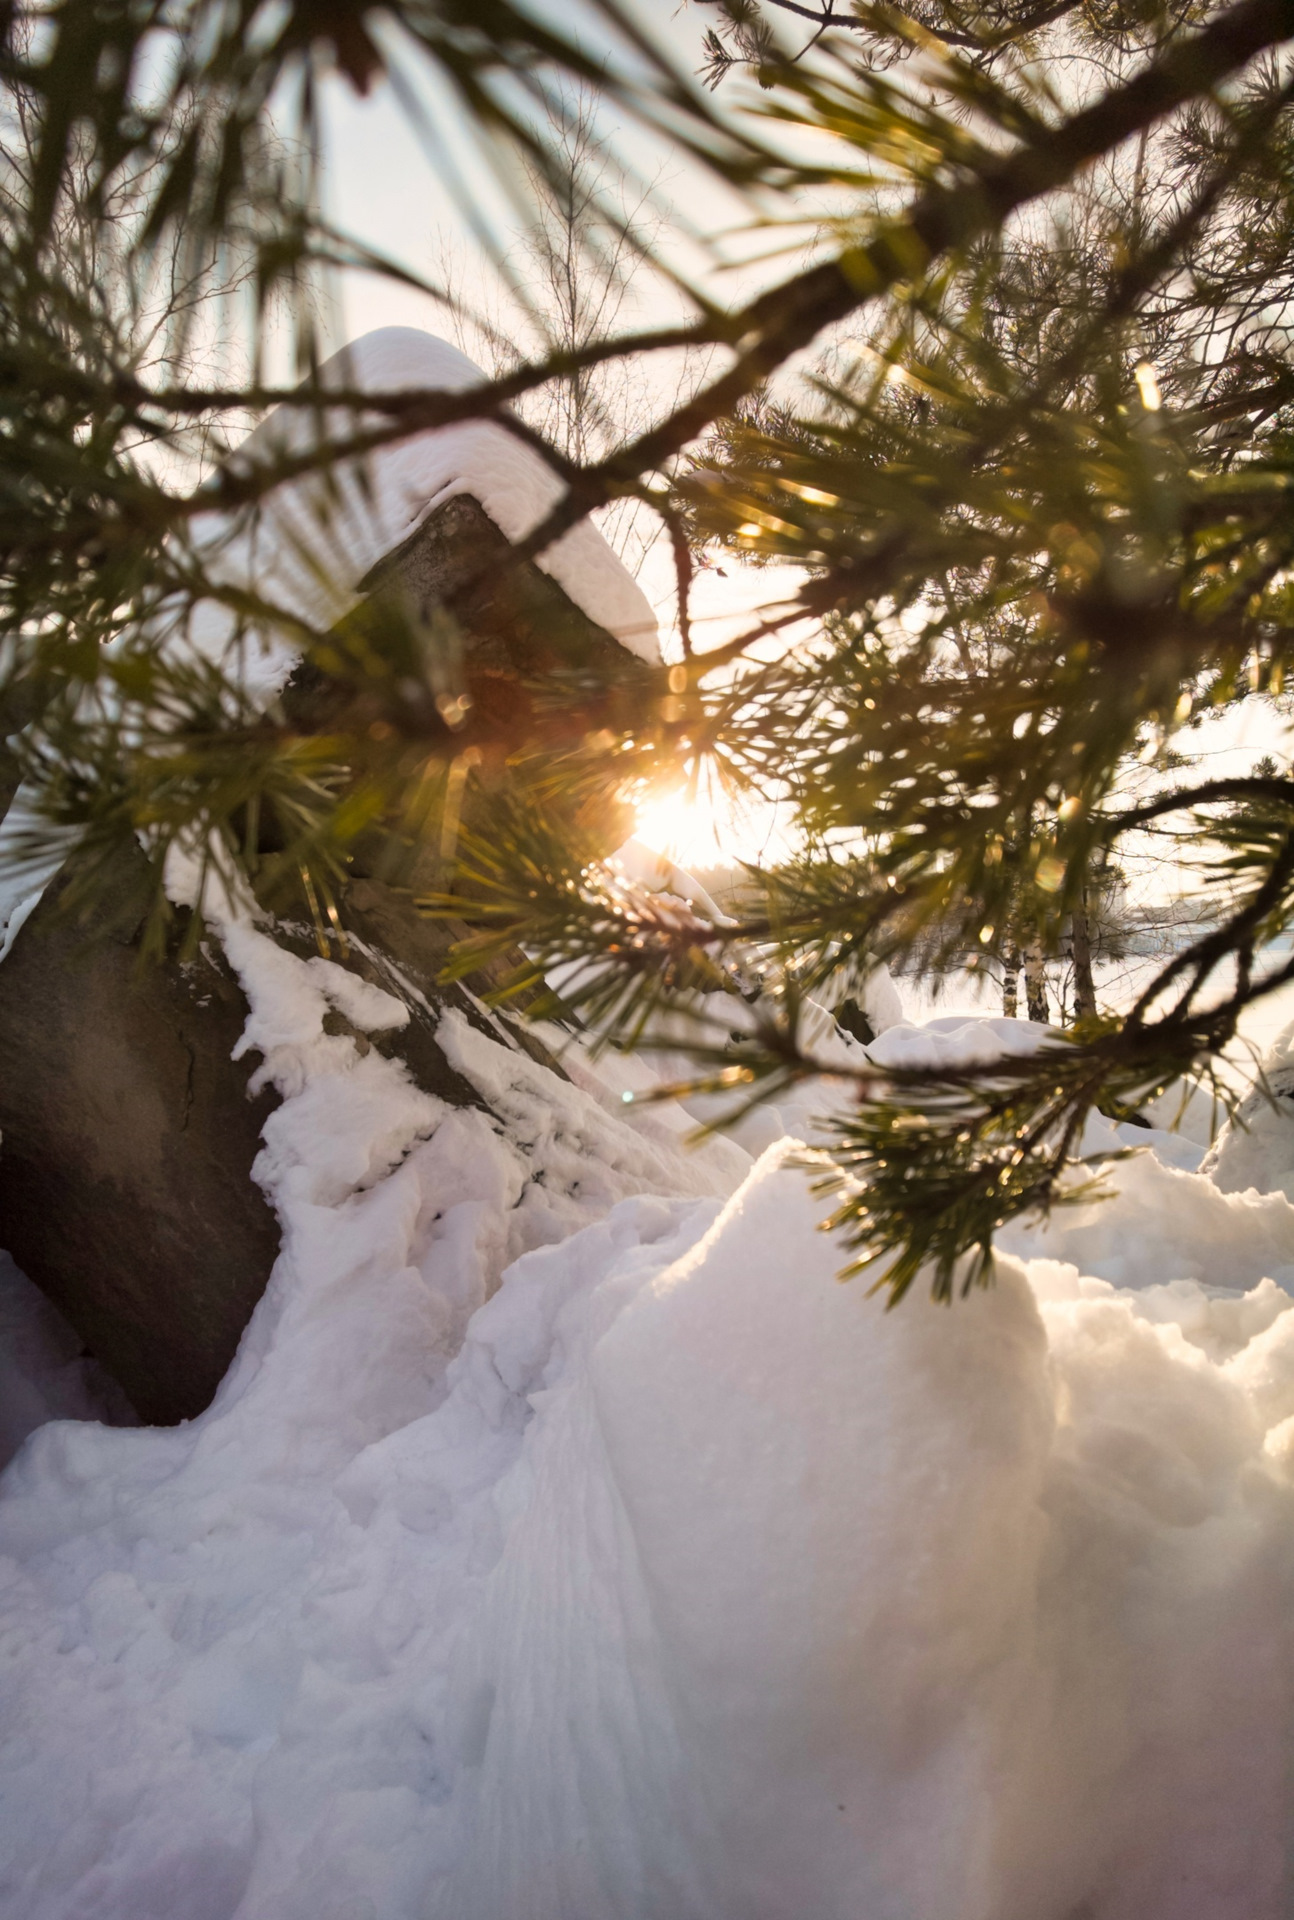 Зима фото на телефон. Дзержинский карьер крещение. Карьер зимой. Канск. Снег, солнце, блики, деревья. Не видевшие нашей зимы